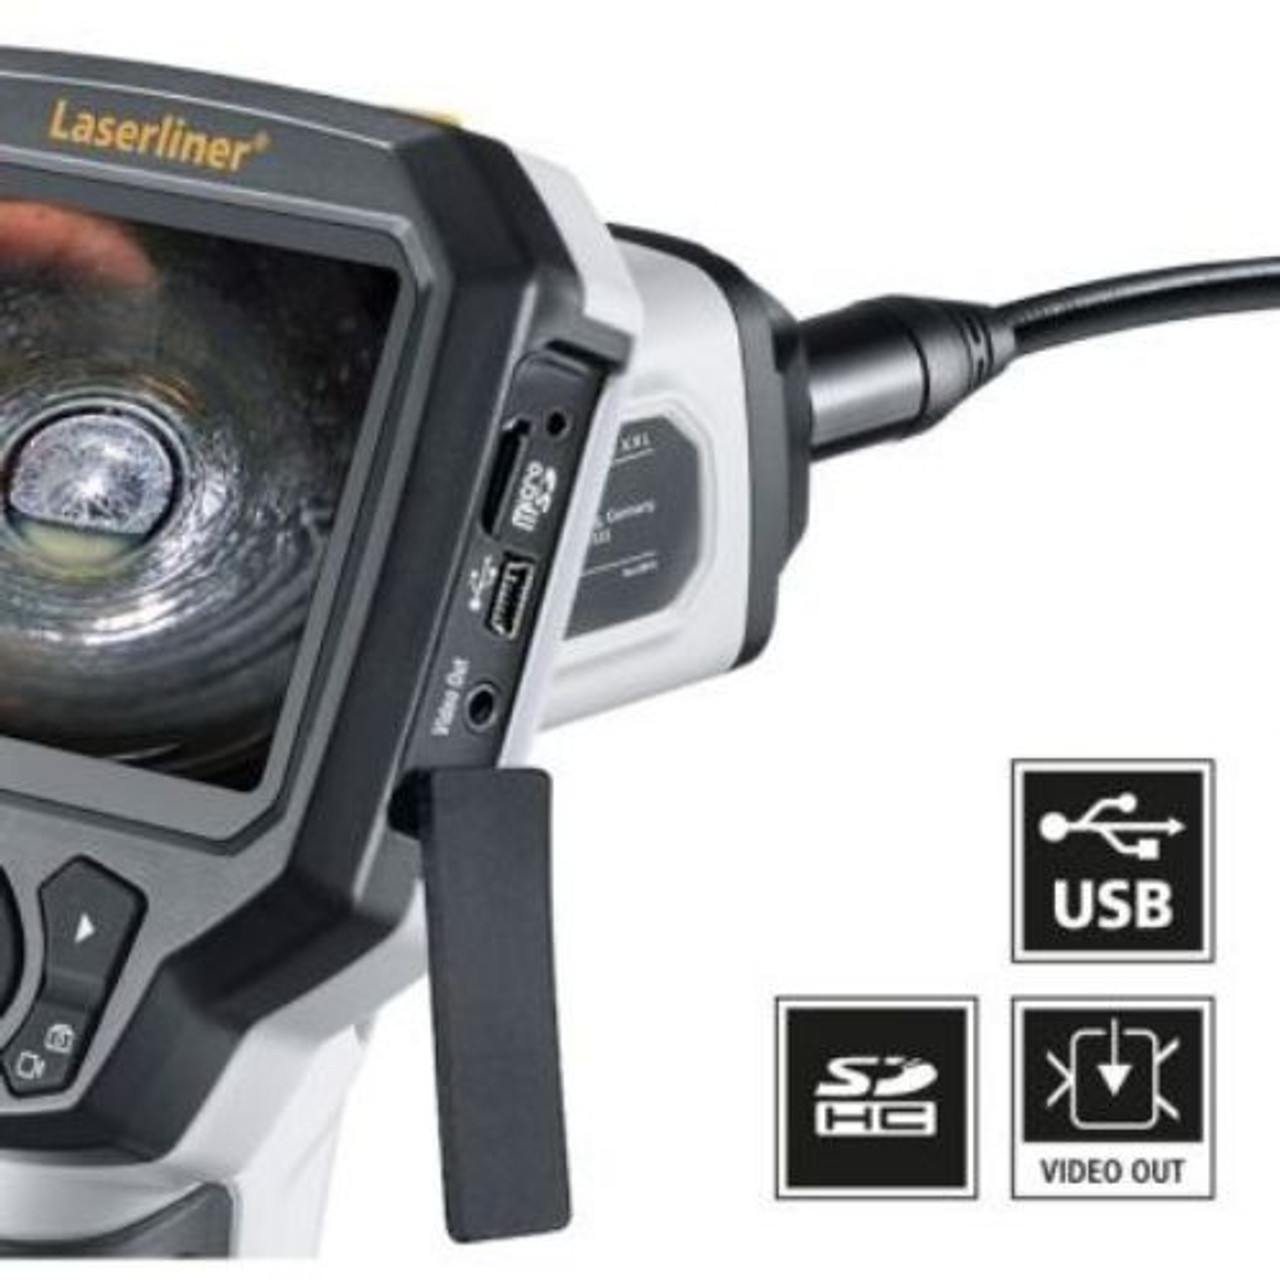 Laserliner video inspection camera